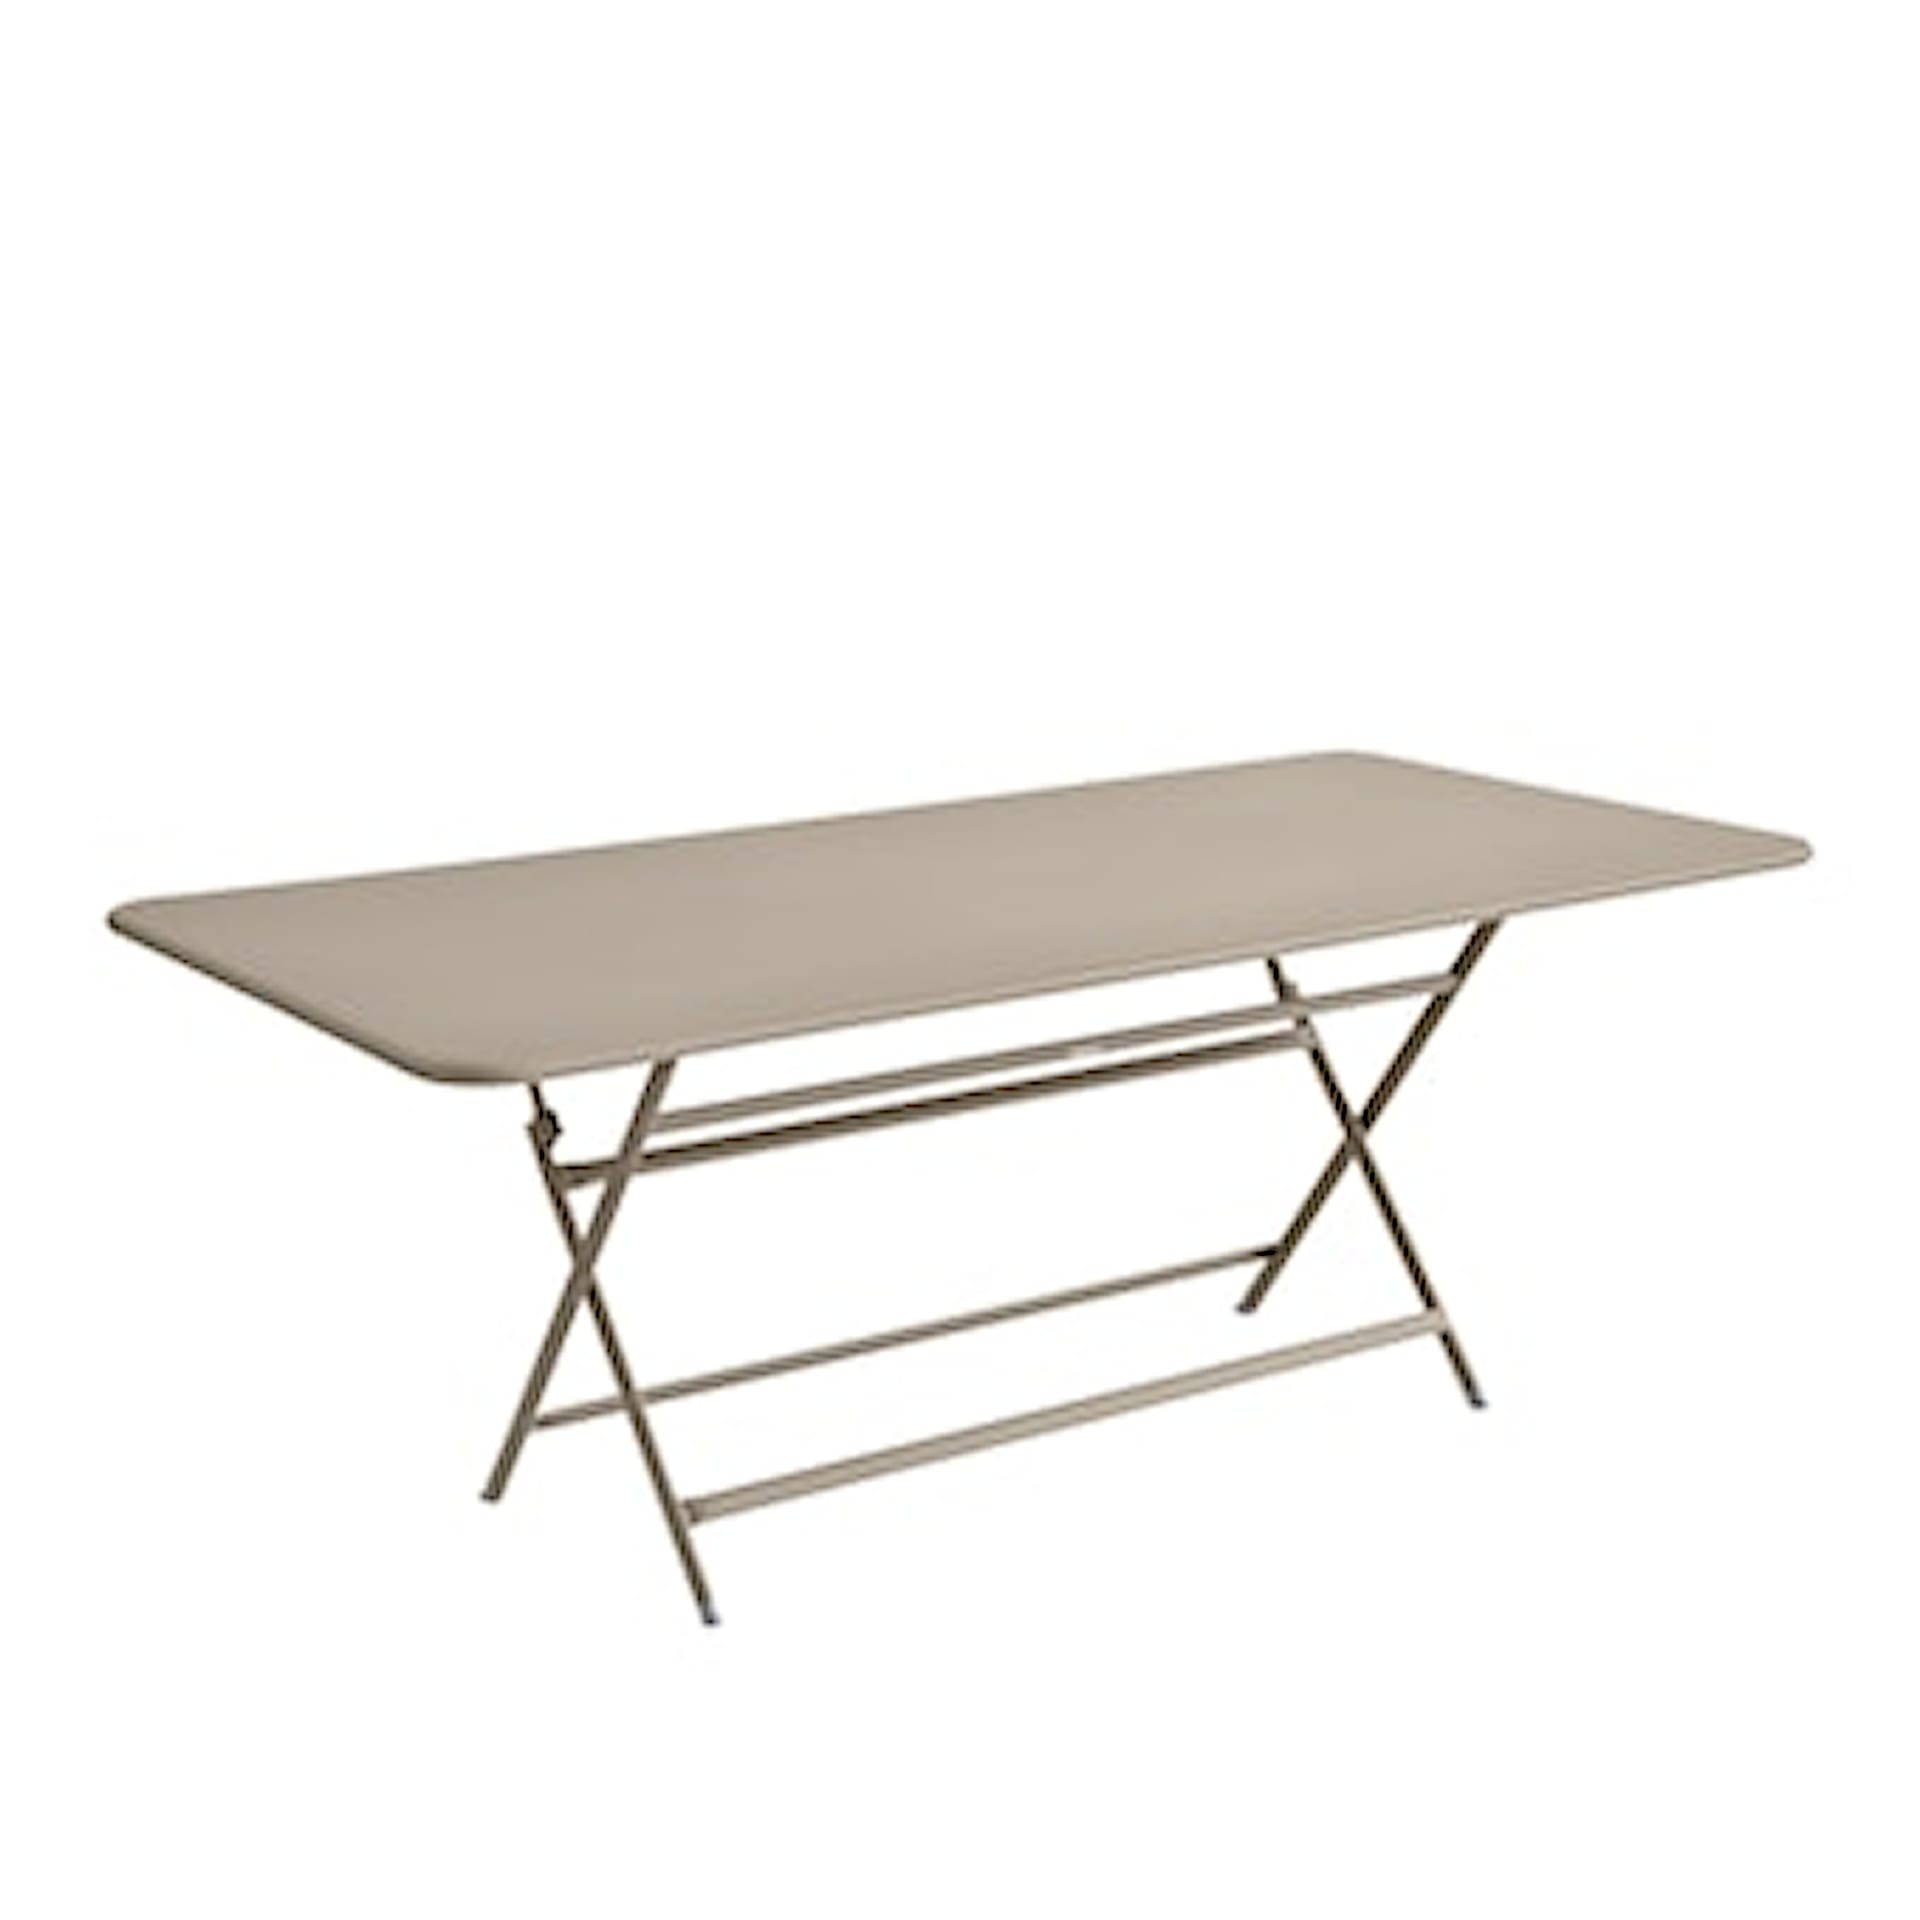 Caractère Table 190x90 cm - Fermob - NO GA